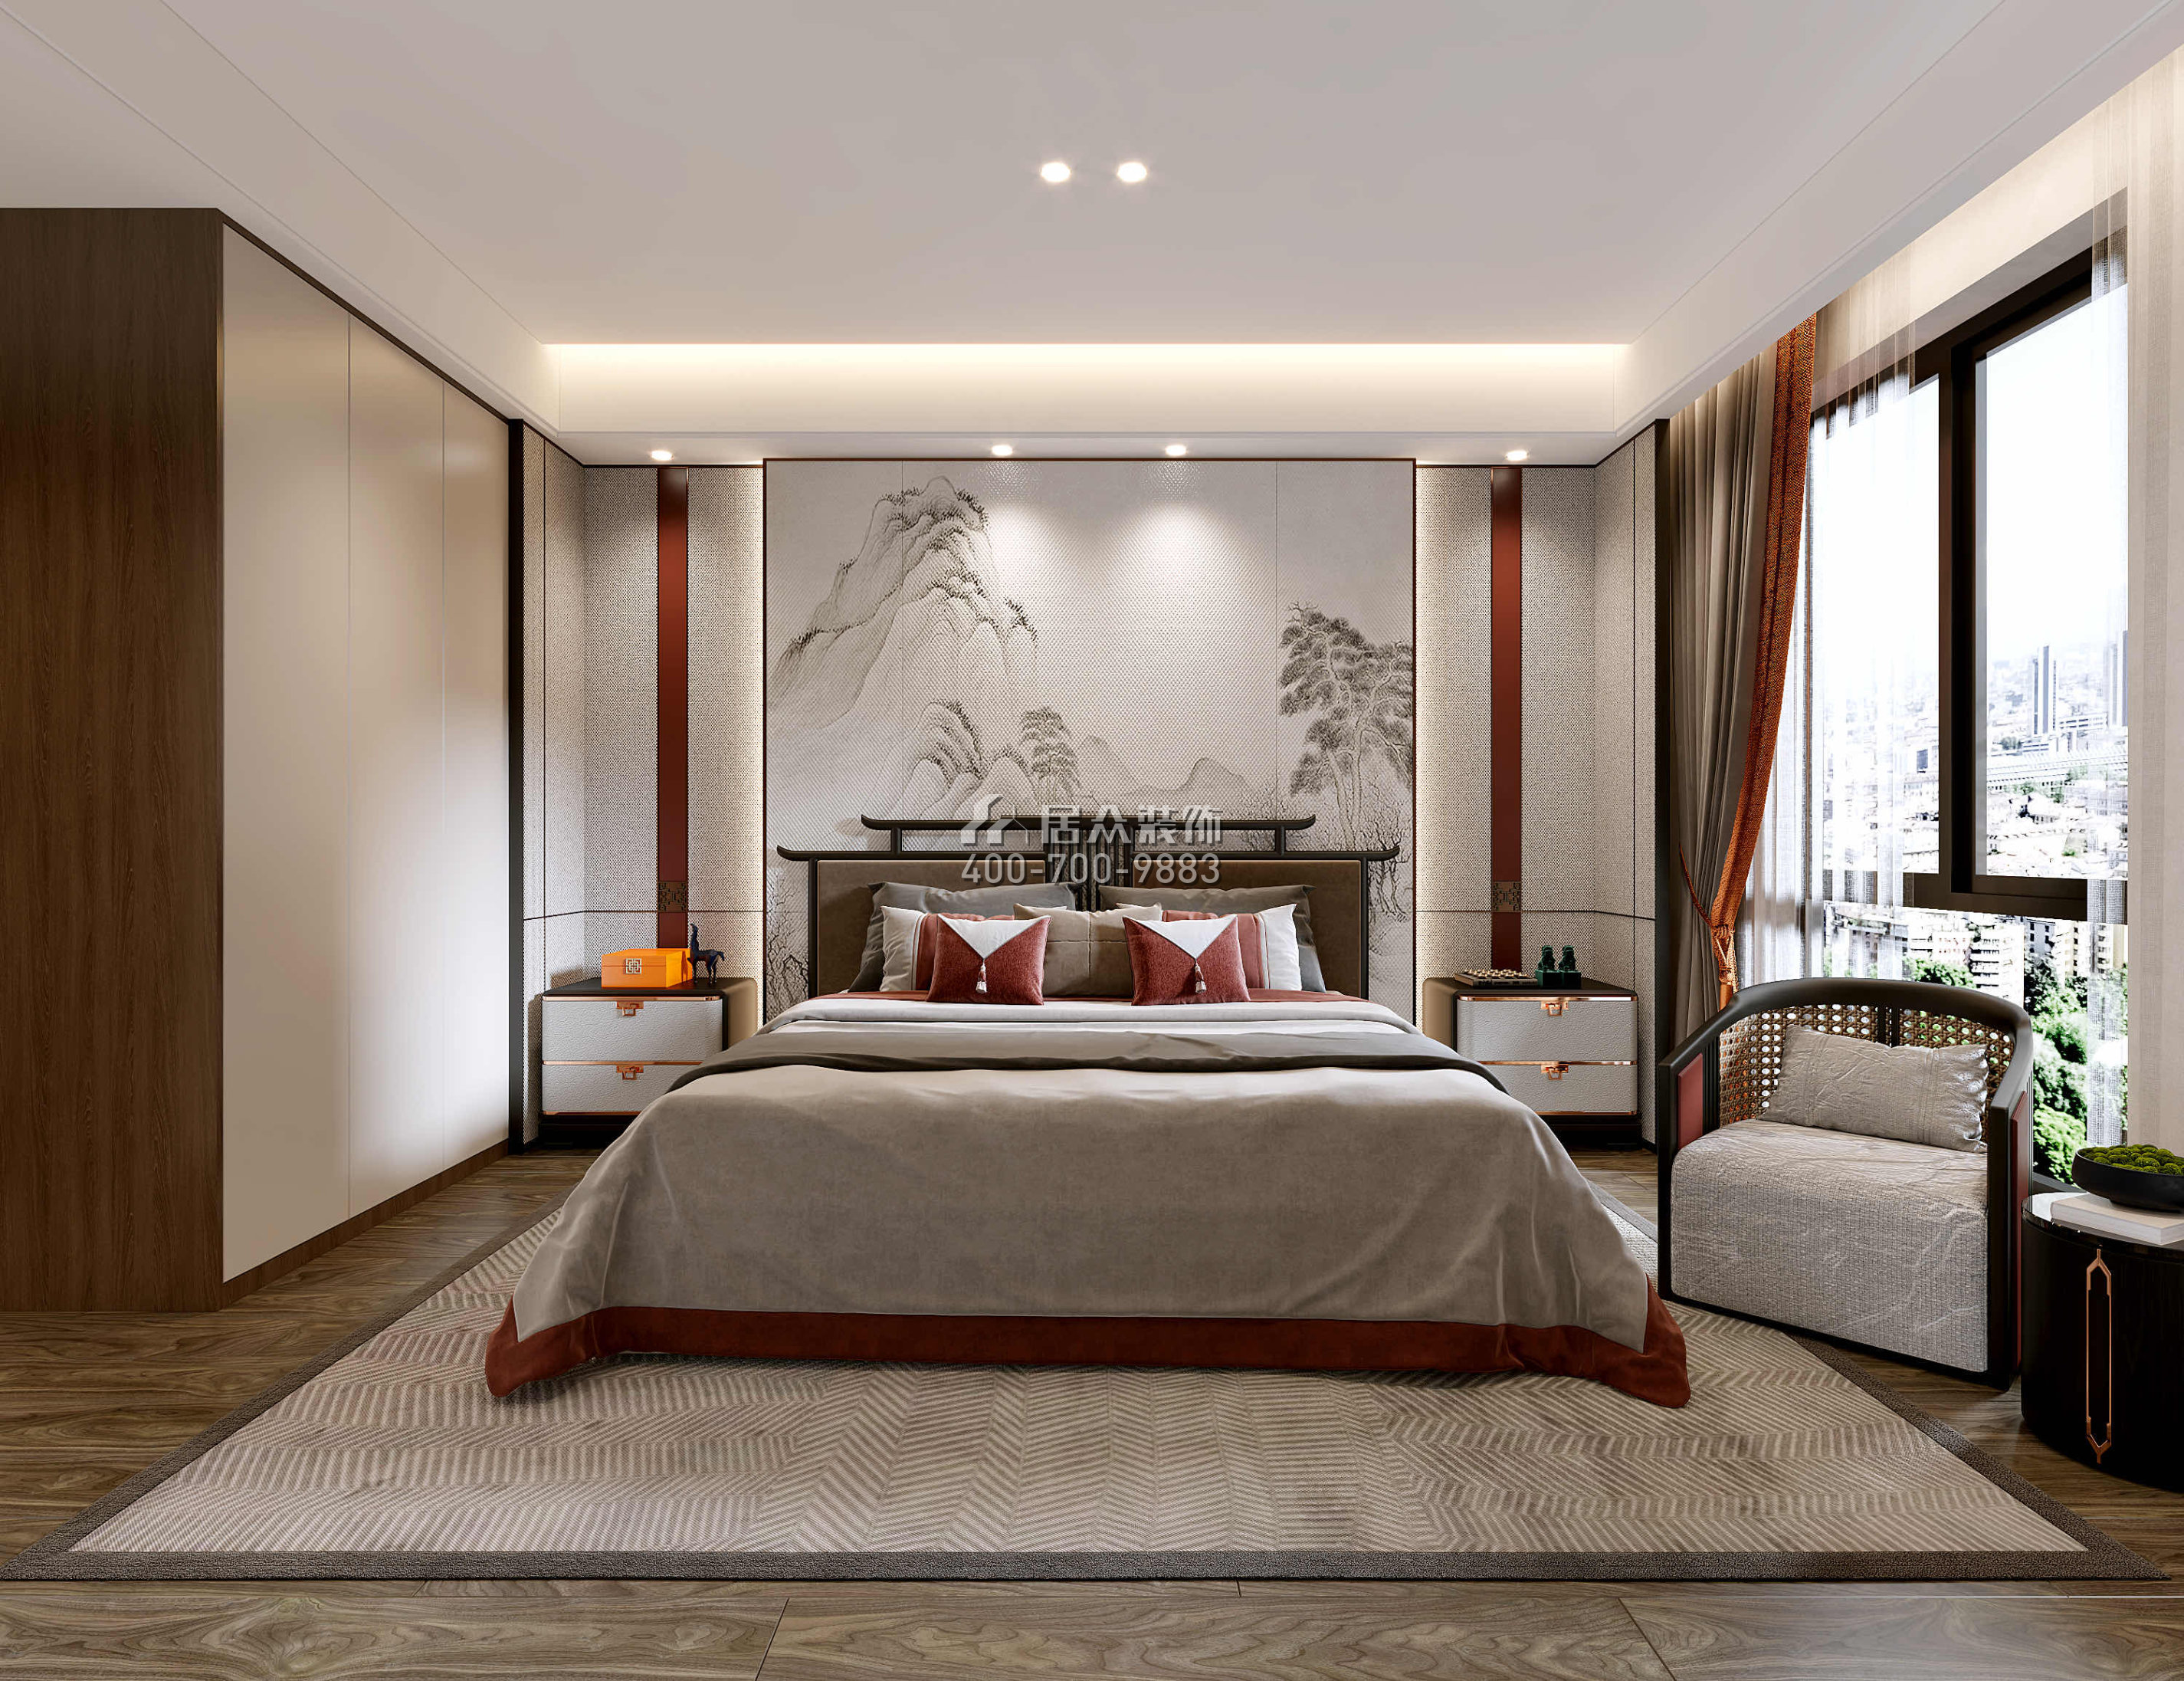 觀嶺高爾夫豪庭430平方米中式風格別墅戶型臥室裝修效果圖